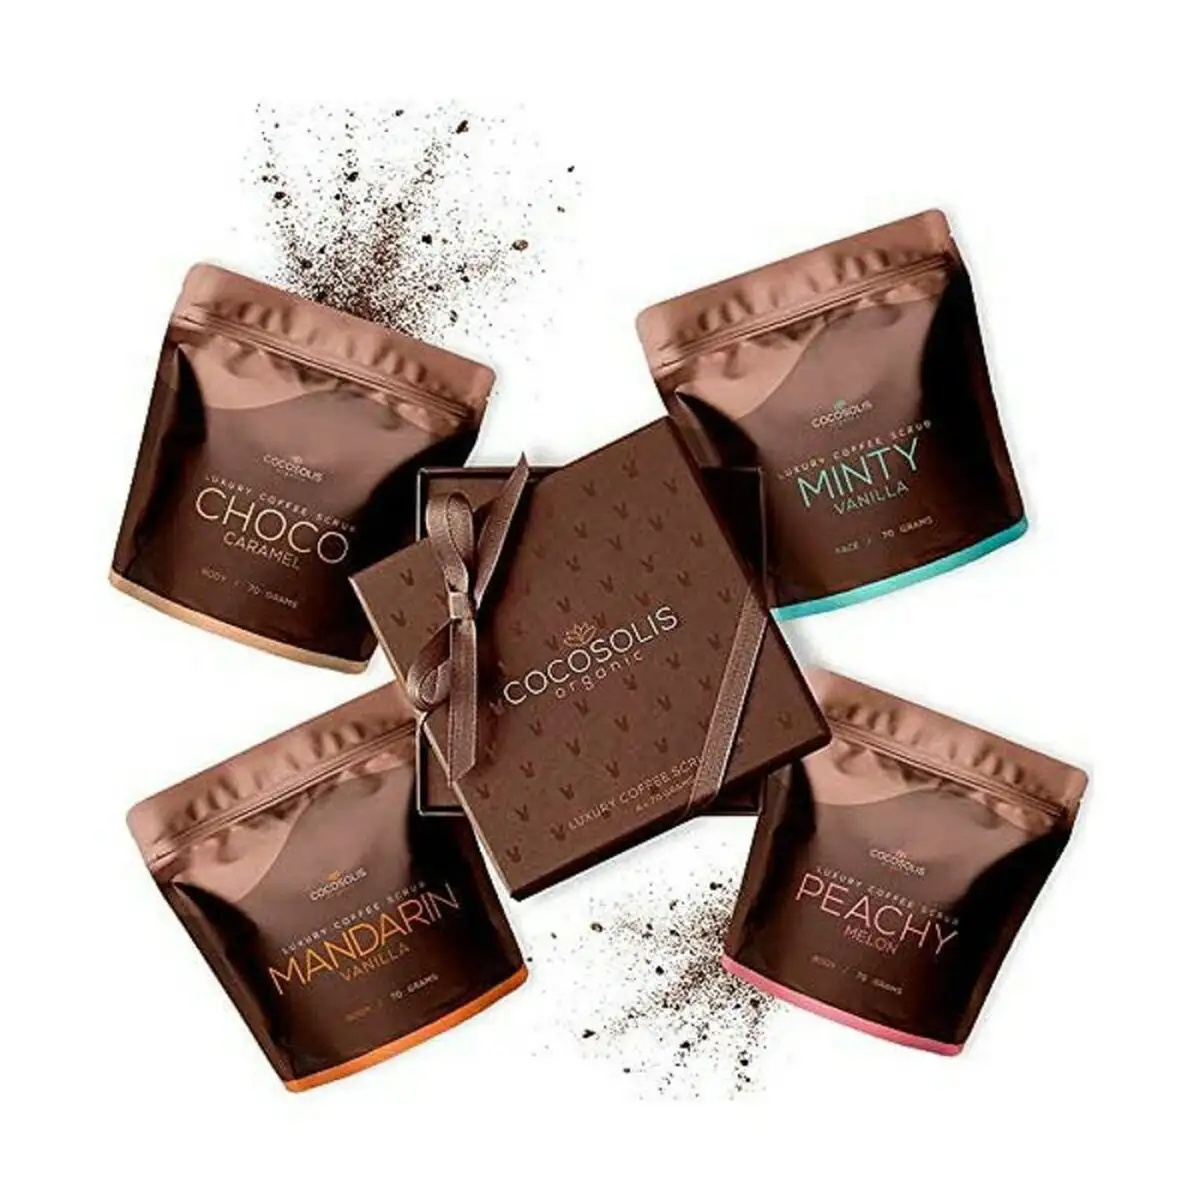 Nettoyant exfoliant luxury coffee scrub box cocosolis 4 x 70 ml _3714. DIAYTAR SENEGAL - L'Art de Choisir, l'Art de Vivre. Parcourez notre boutique en ligne et découvrez des produits qui transforment chaque choix en une expérience enrichissante.